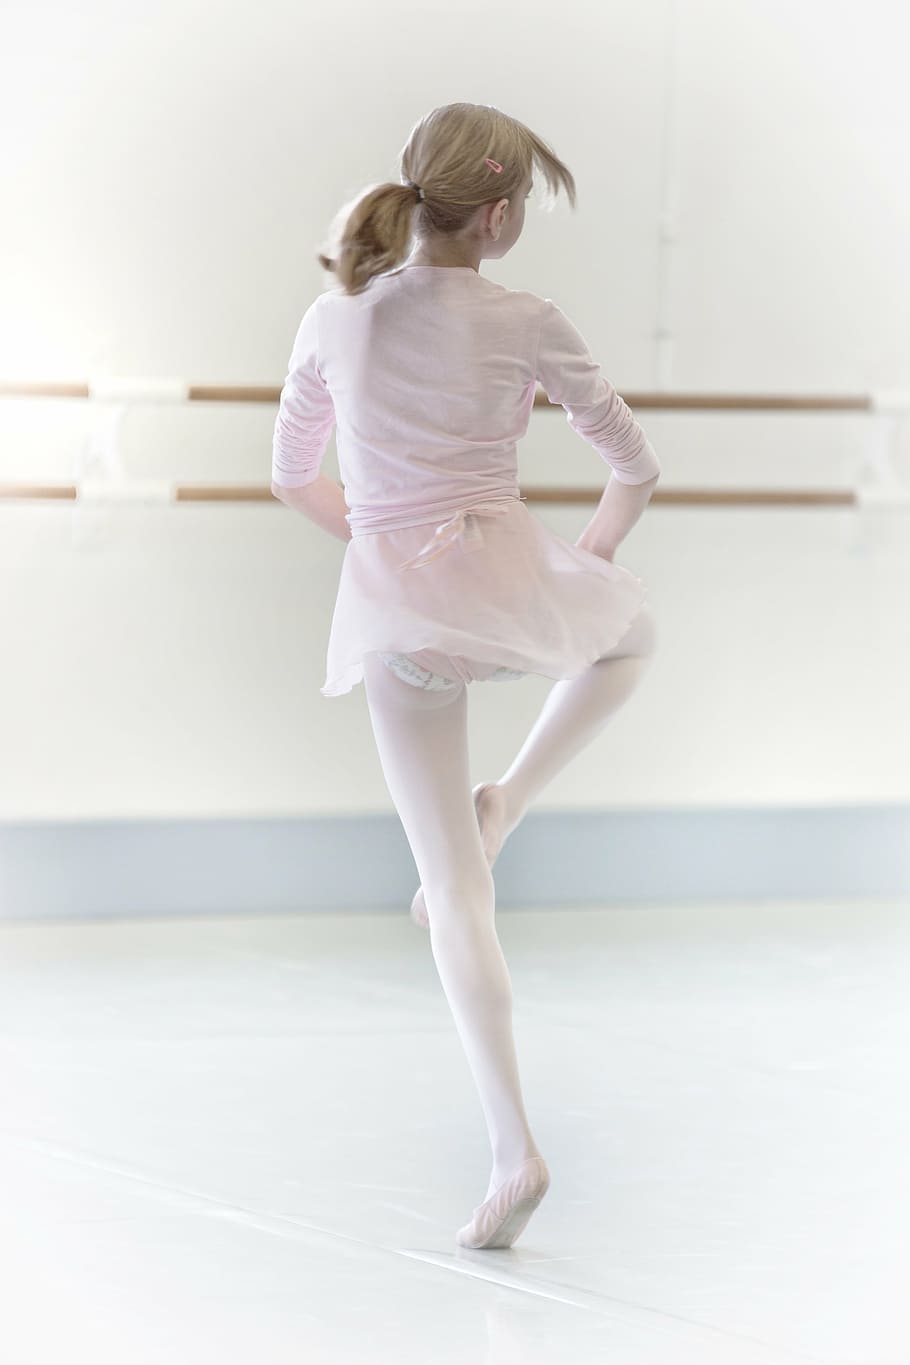 garota, praticando, atividades de bailarina, dança, dançarina, chave alta, balé, bailarina, comprimento total, habilidade